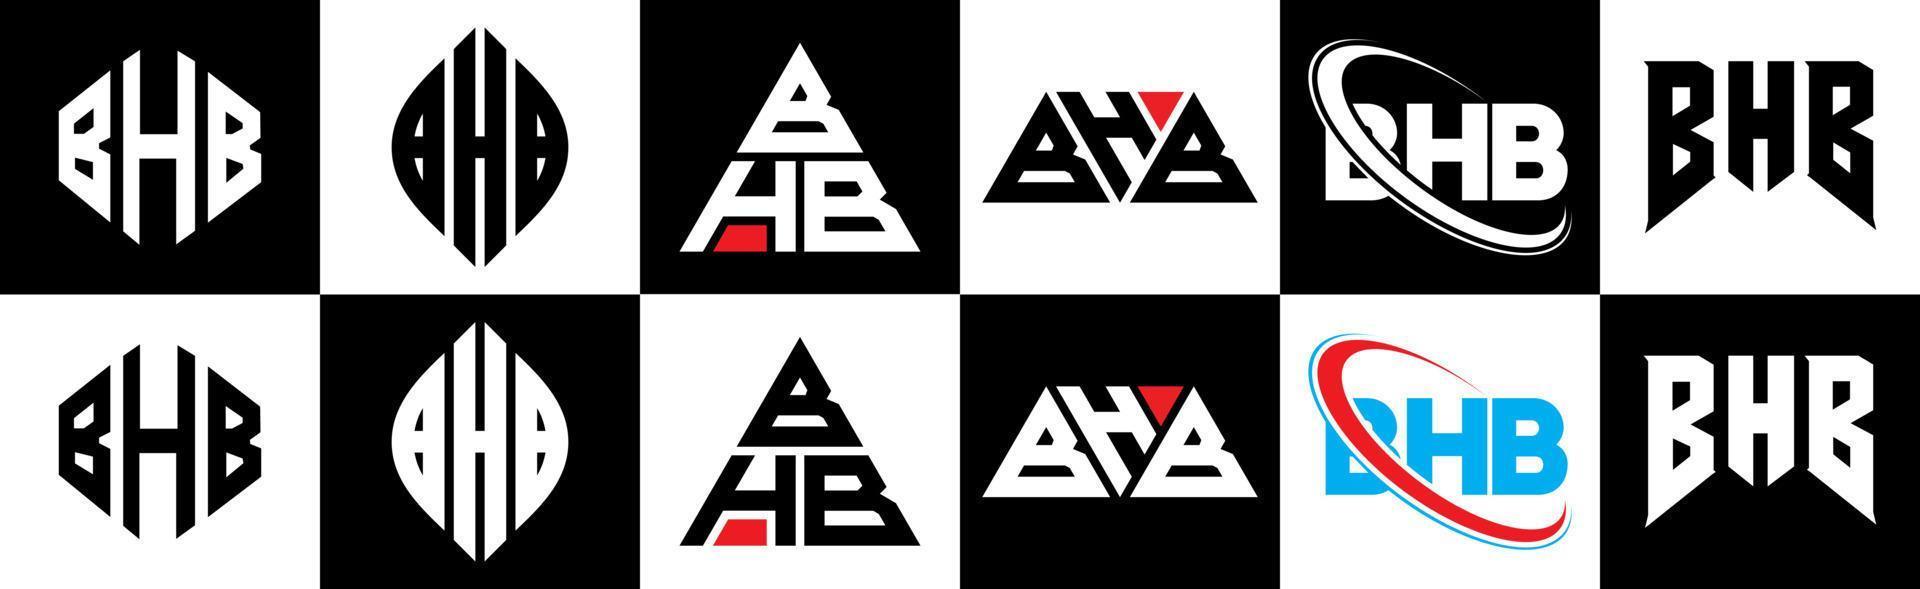 création de logo de lettre bhb en six styles. bhb polygone, cercle, triangle, hexagone, style plat et simple avec logo de lettre de variation de couleur noir et blanc dans un plan de travail. logo bhb minimaliste et classique vecteur